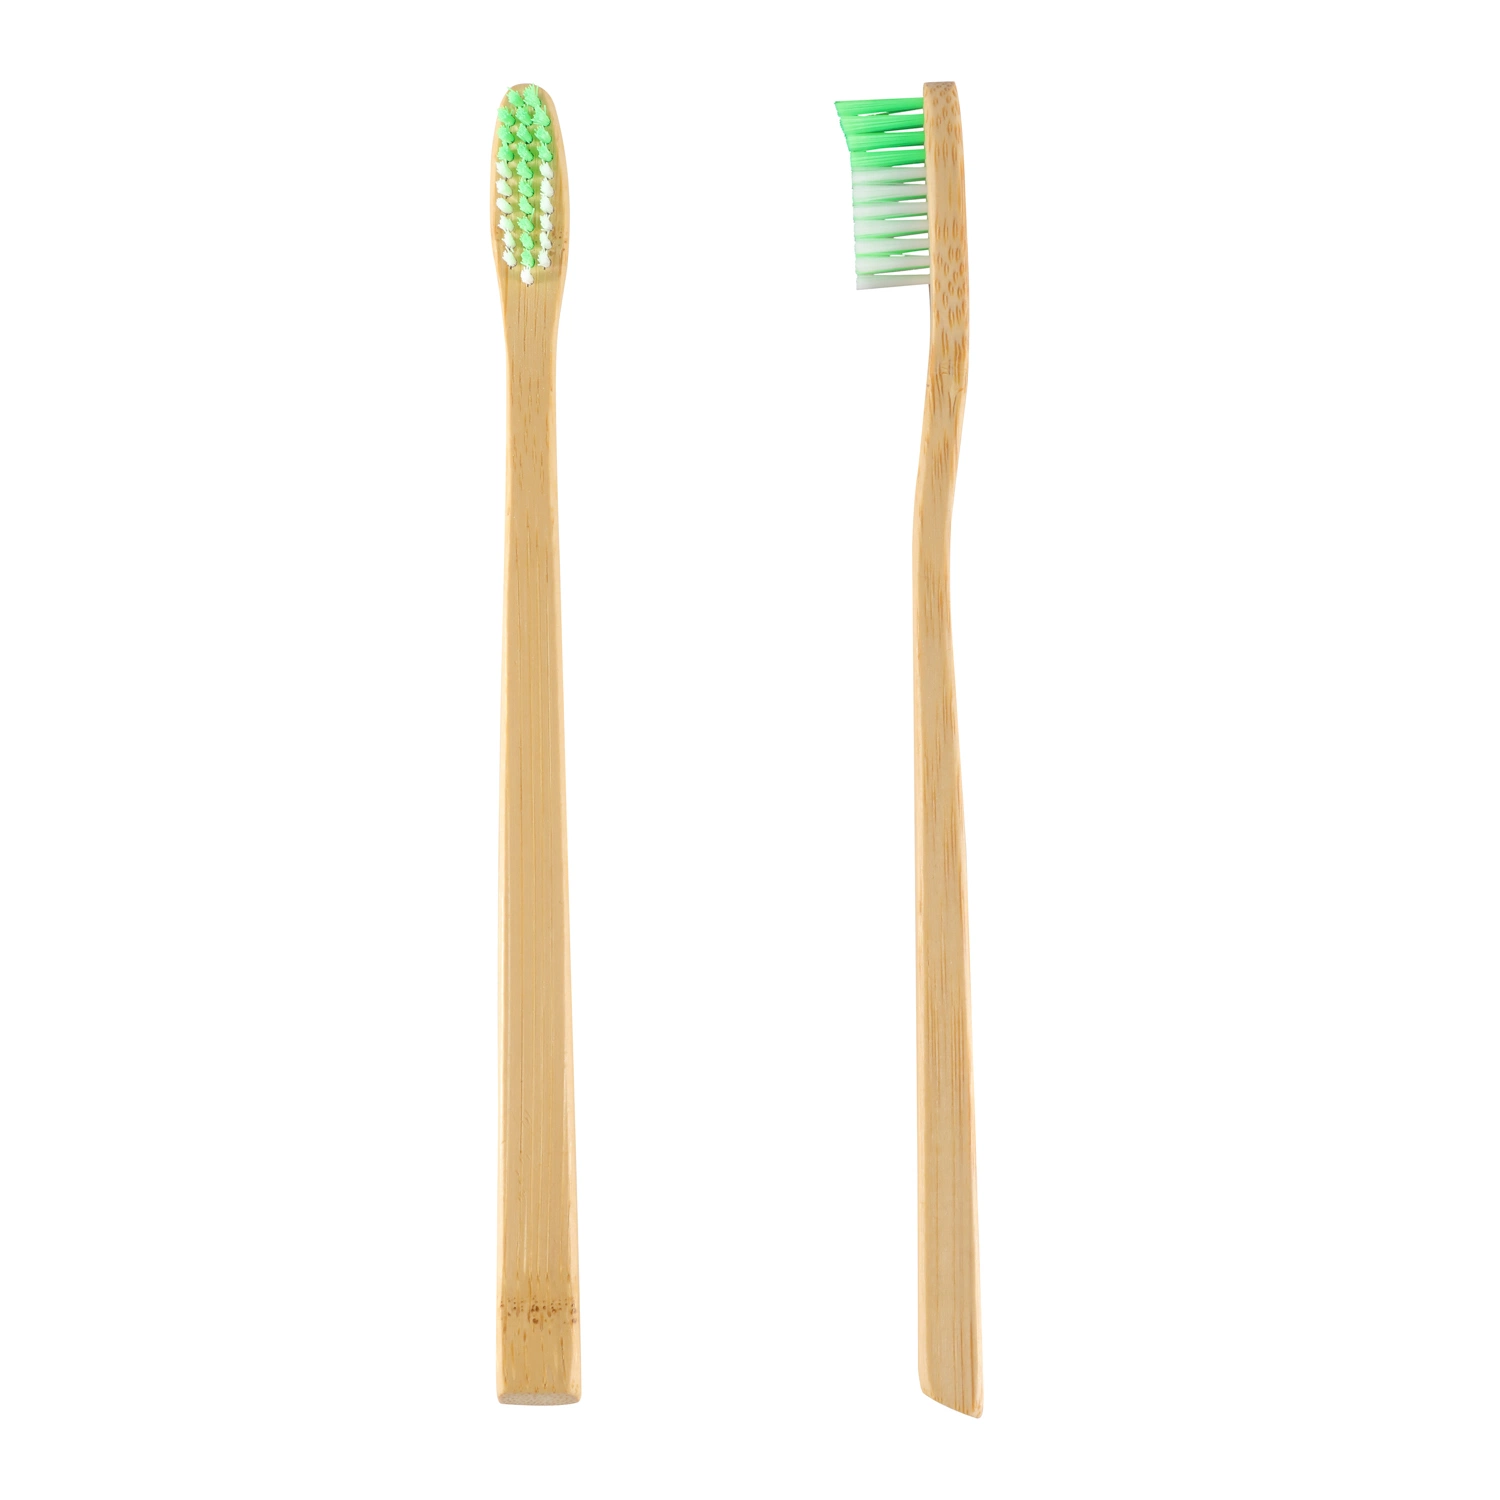 Популярные товары для взрослых одноразовые принадлежности для плоских зубных щеток Bamboo с закругенным изрезом Зубная щетка для работы в среде бамбу